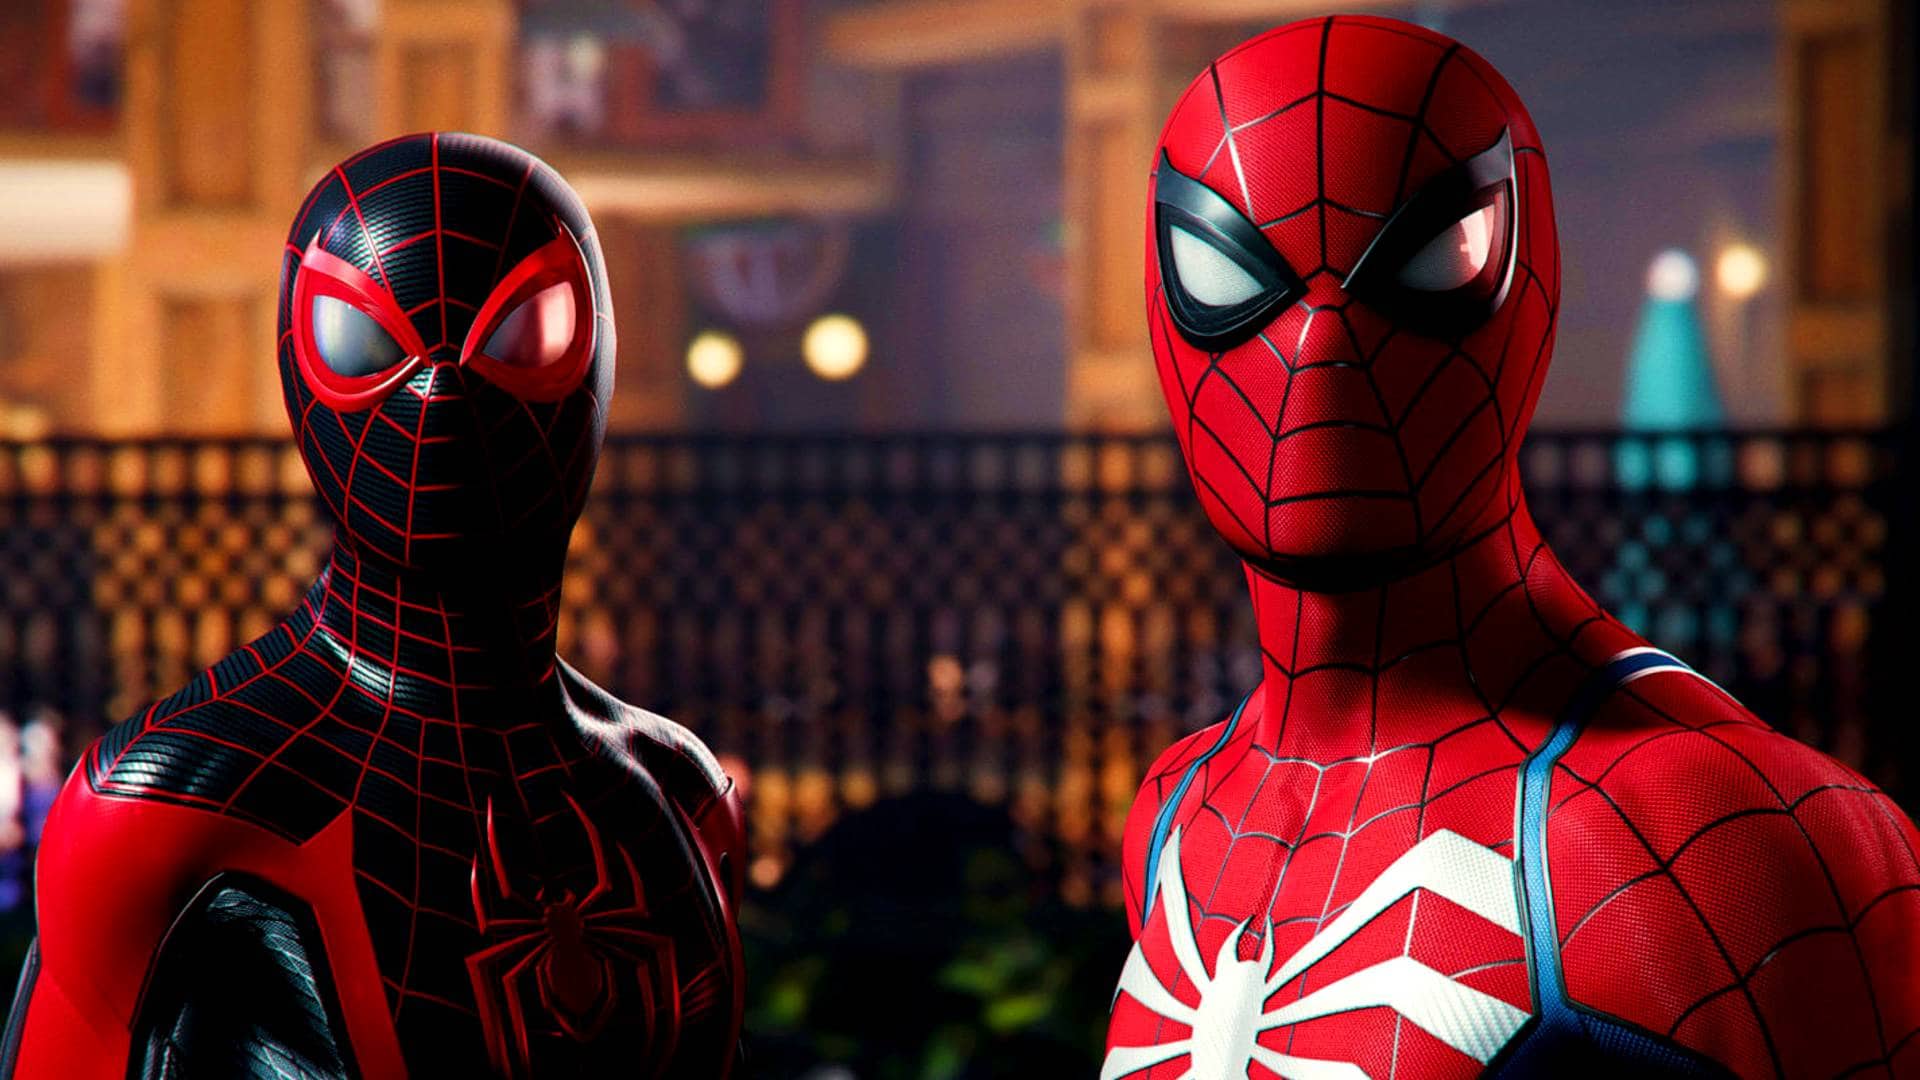 Marvel's Spider-Man 2 acerta com sequência honesta e espetacular para fãs